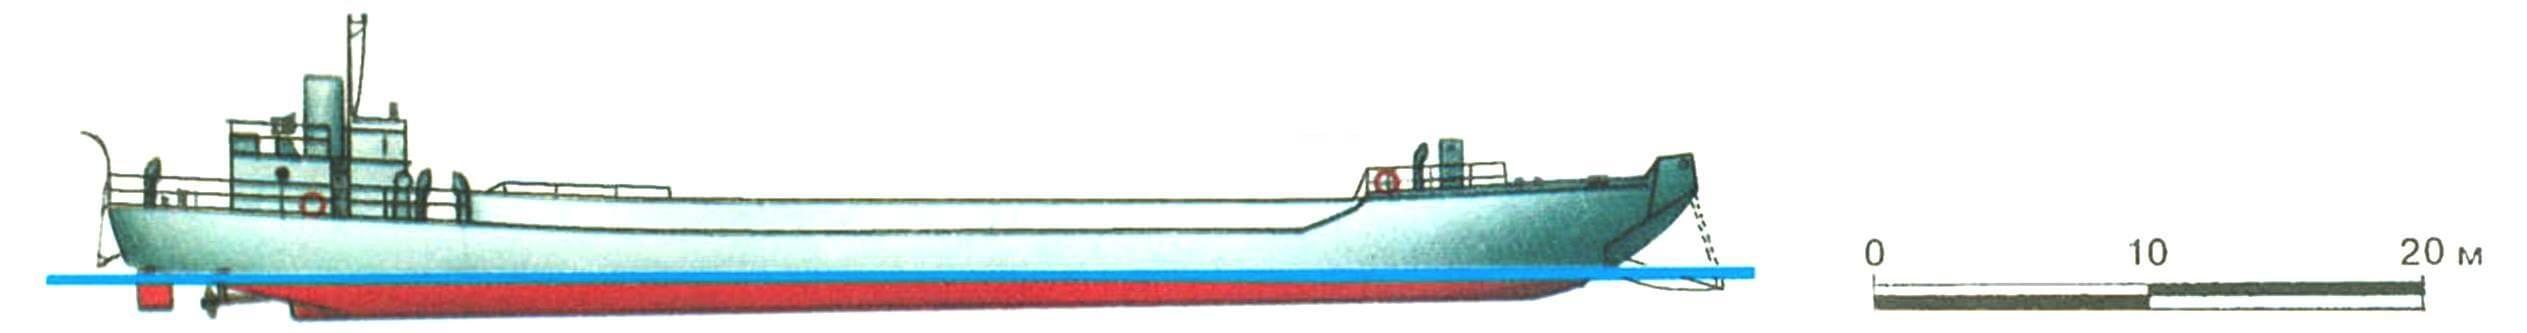 8. Средний танкодесантный корабль типа LCT-3, Англия, 1941 г. Водоизмещение 640 т в грузу. Длина 58,5 м, ширина 9,5 м, средняя осадка 1,7 м. Два бензиновых мотора общей мощностью 1000 л.с., скорость 10,5 узла. Вооружение: два 40-мм и два 20-мм автомата. Вместимость: 11 20-тонных или 5 40-тонных танков. Аналогичны LCT-2, только в средней части добавлена секция длиной 9,2 м. Для транспортировки разбирались на 5 частей. Всего построено 250 ед., из них 31 погибла в годы войны.